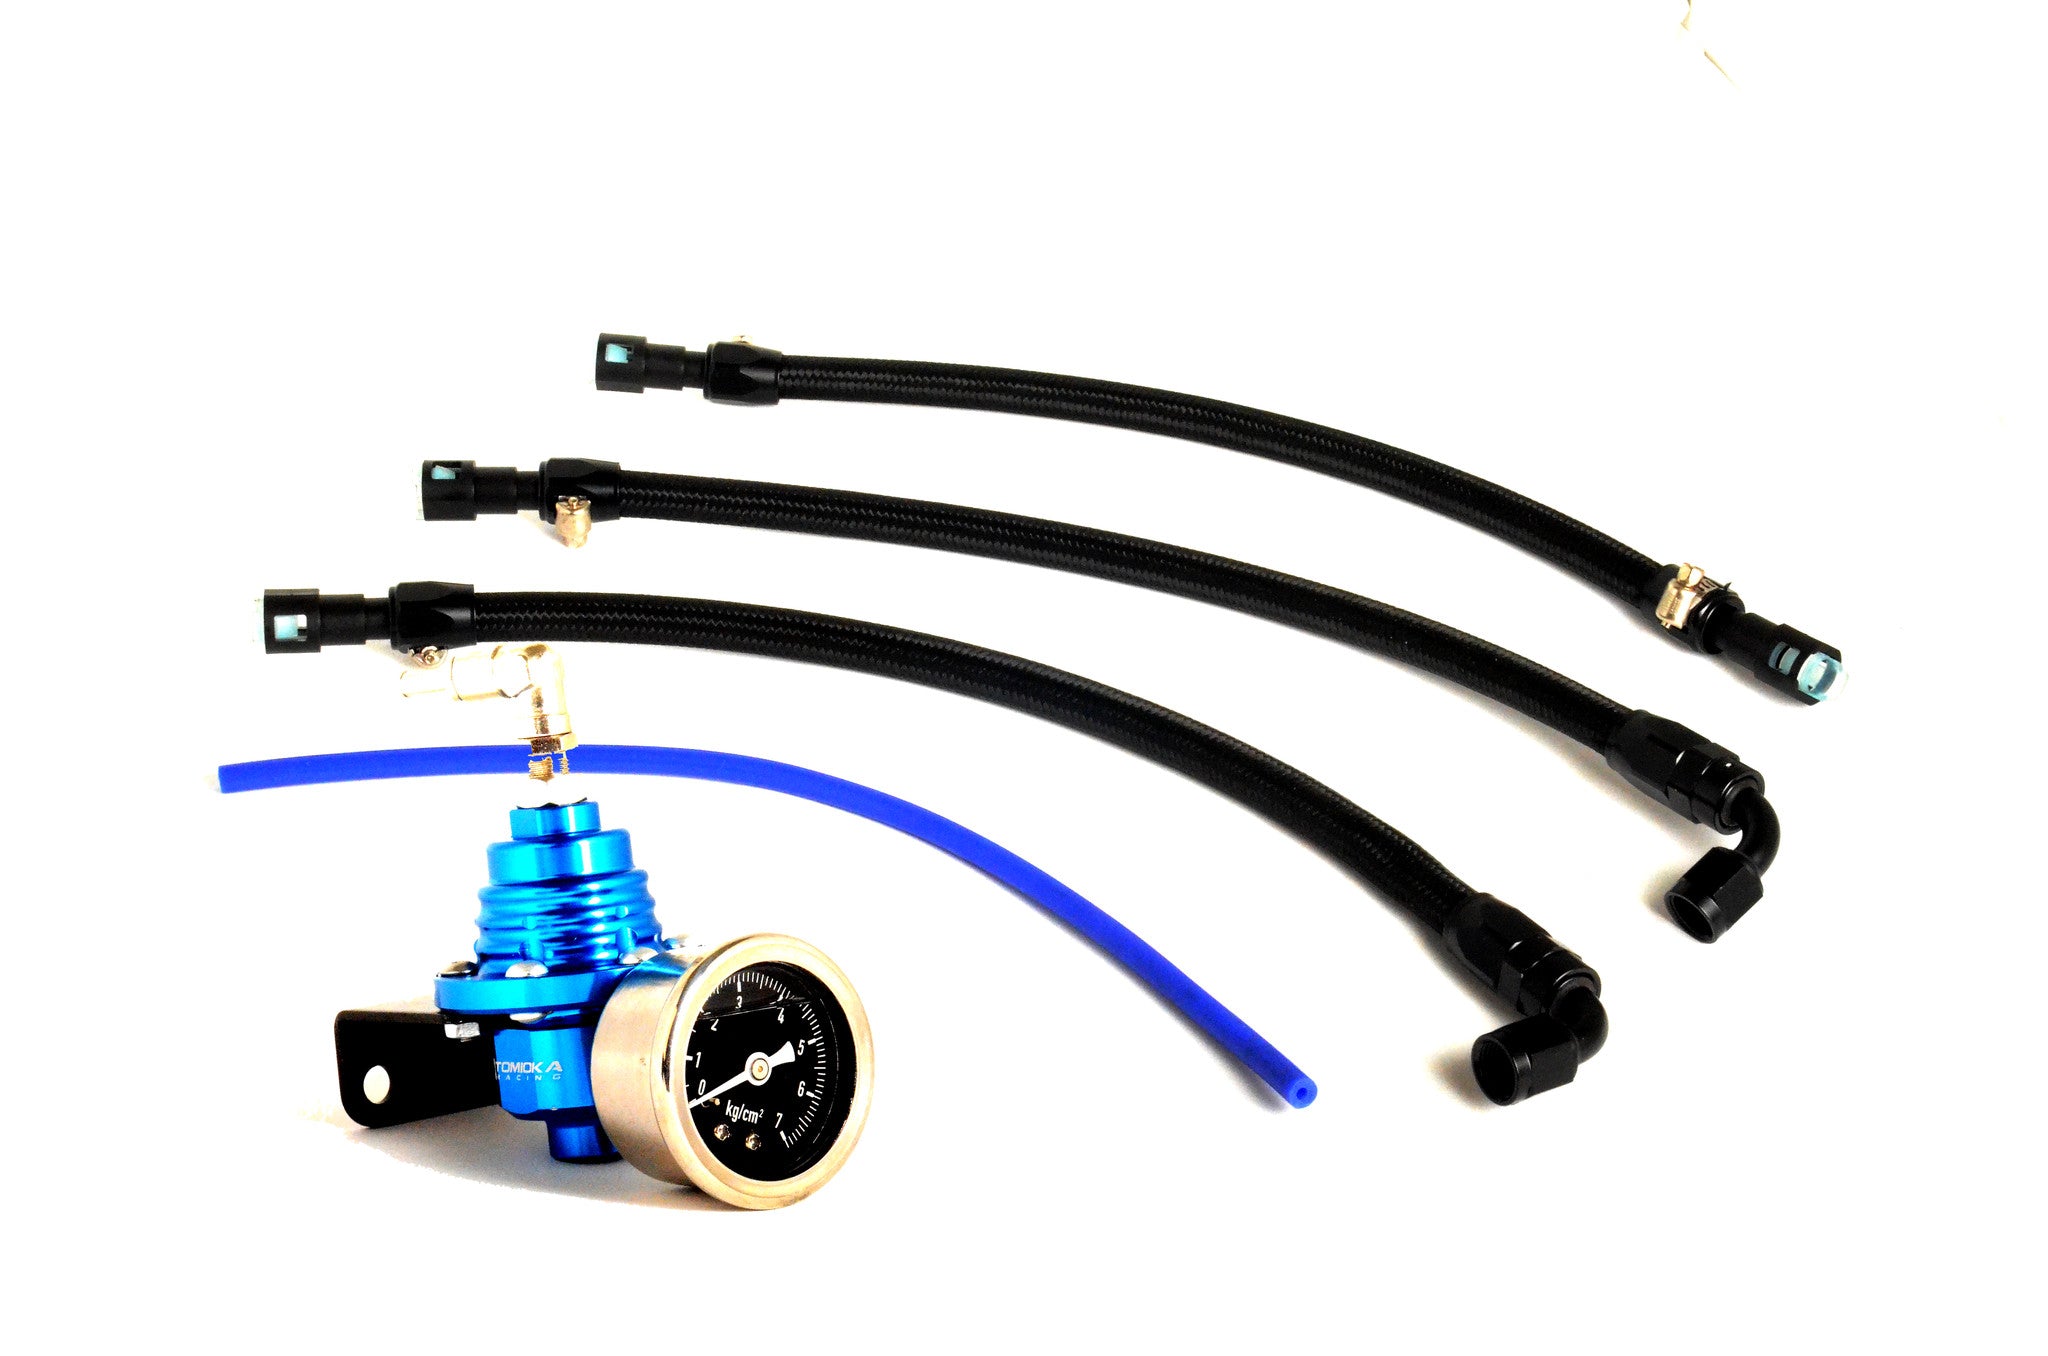 Subaru STi Adjustable Fuel Pressure Regulator Kit